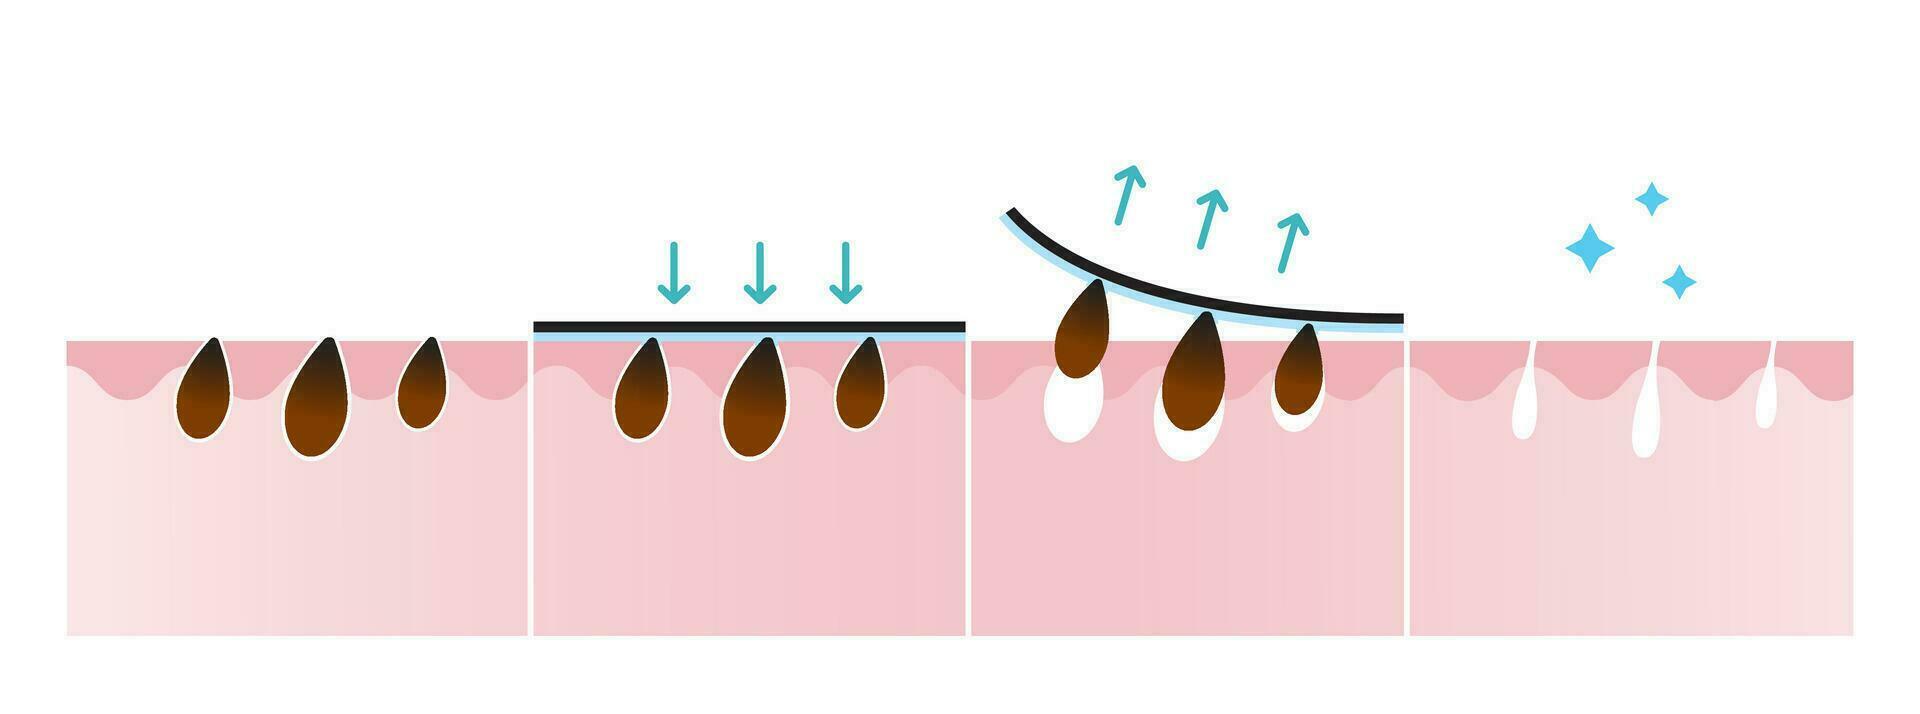 pormask avlägsnande bearbeta vektor illustration isolerat på vit bakgrund. korsa sektion av pormask por remsa behandling, tillämpa, skala av, avstängning och spänna porer. innan och efter begrepp.